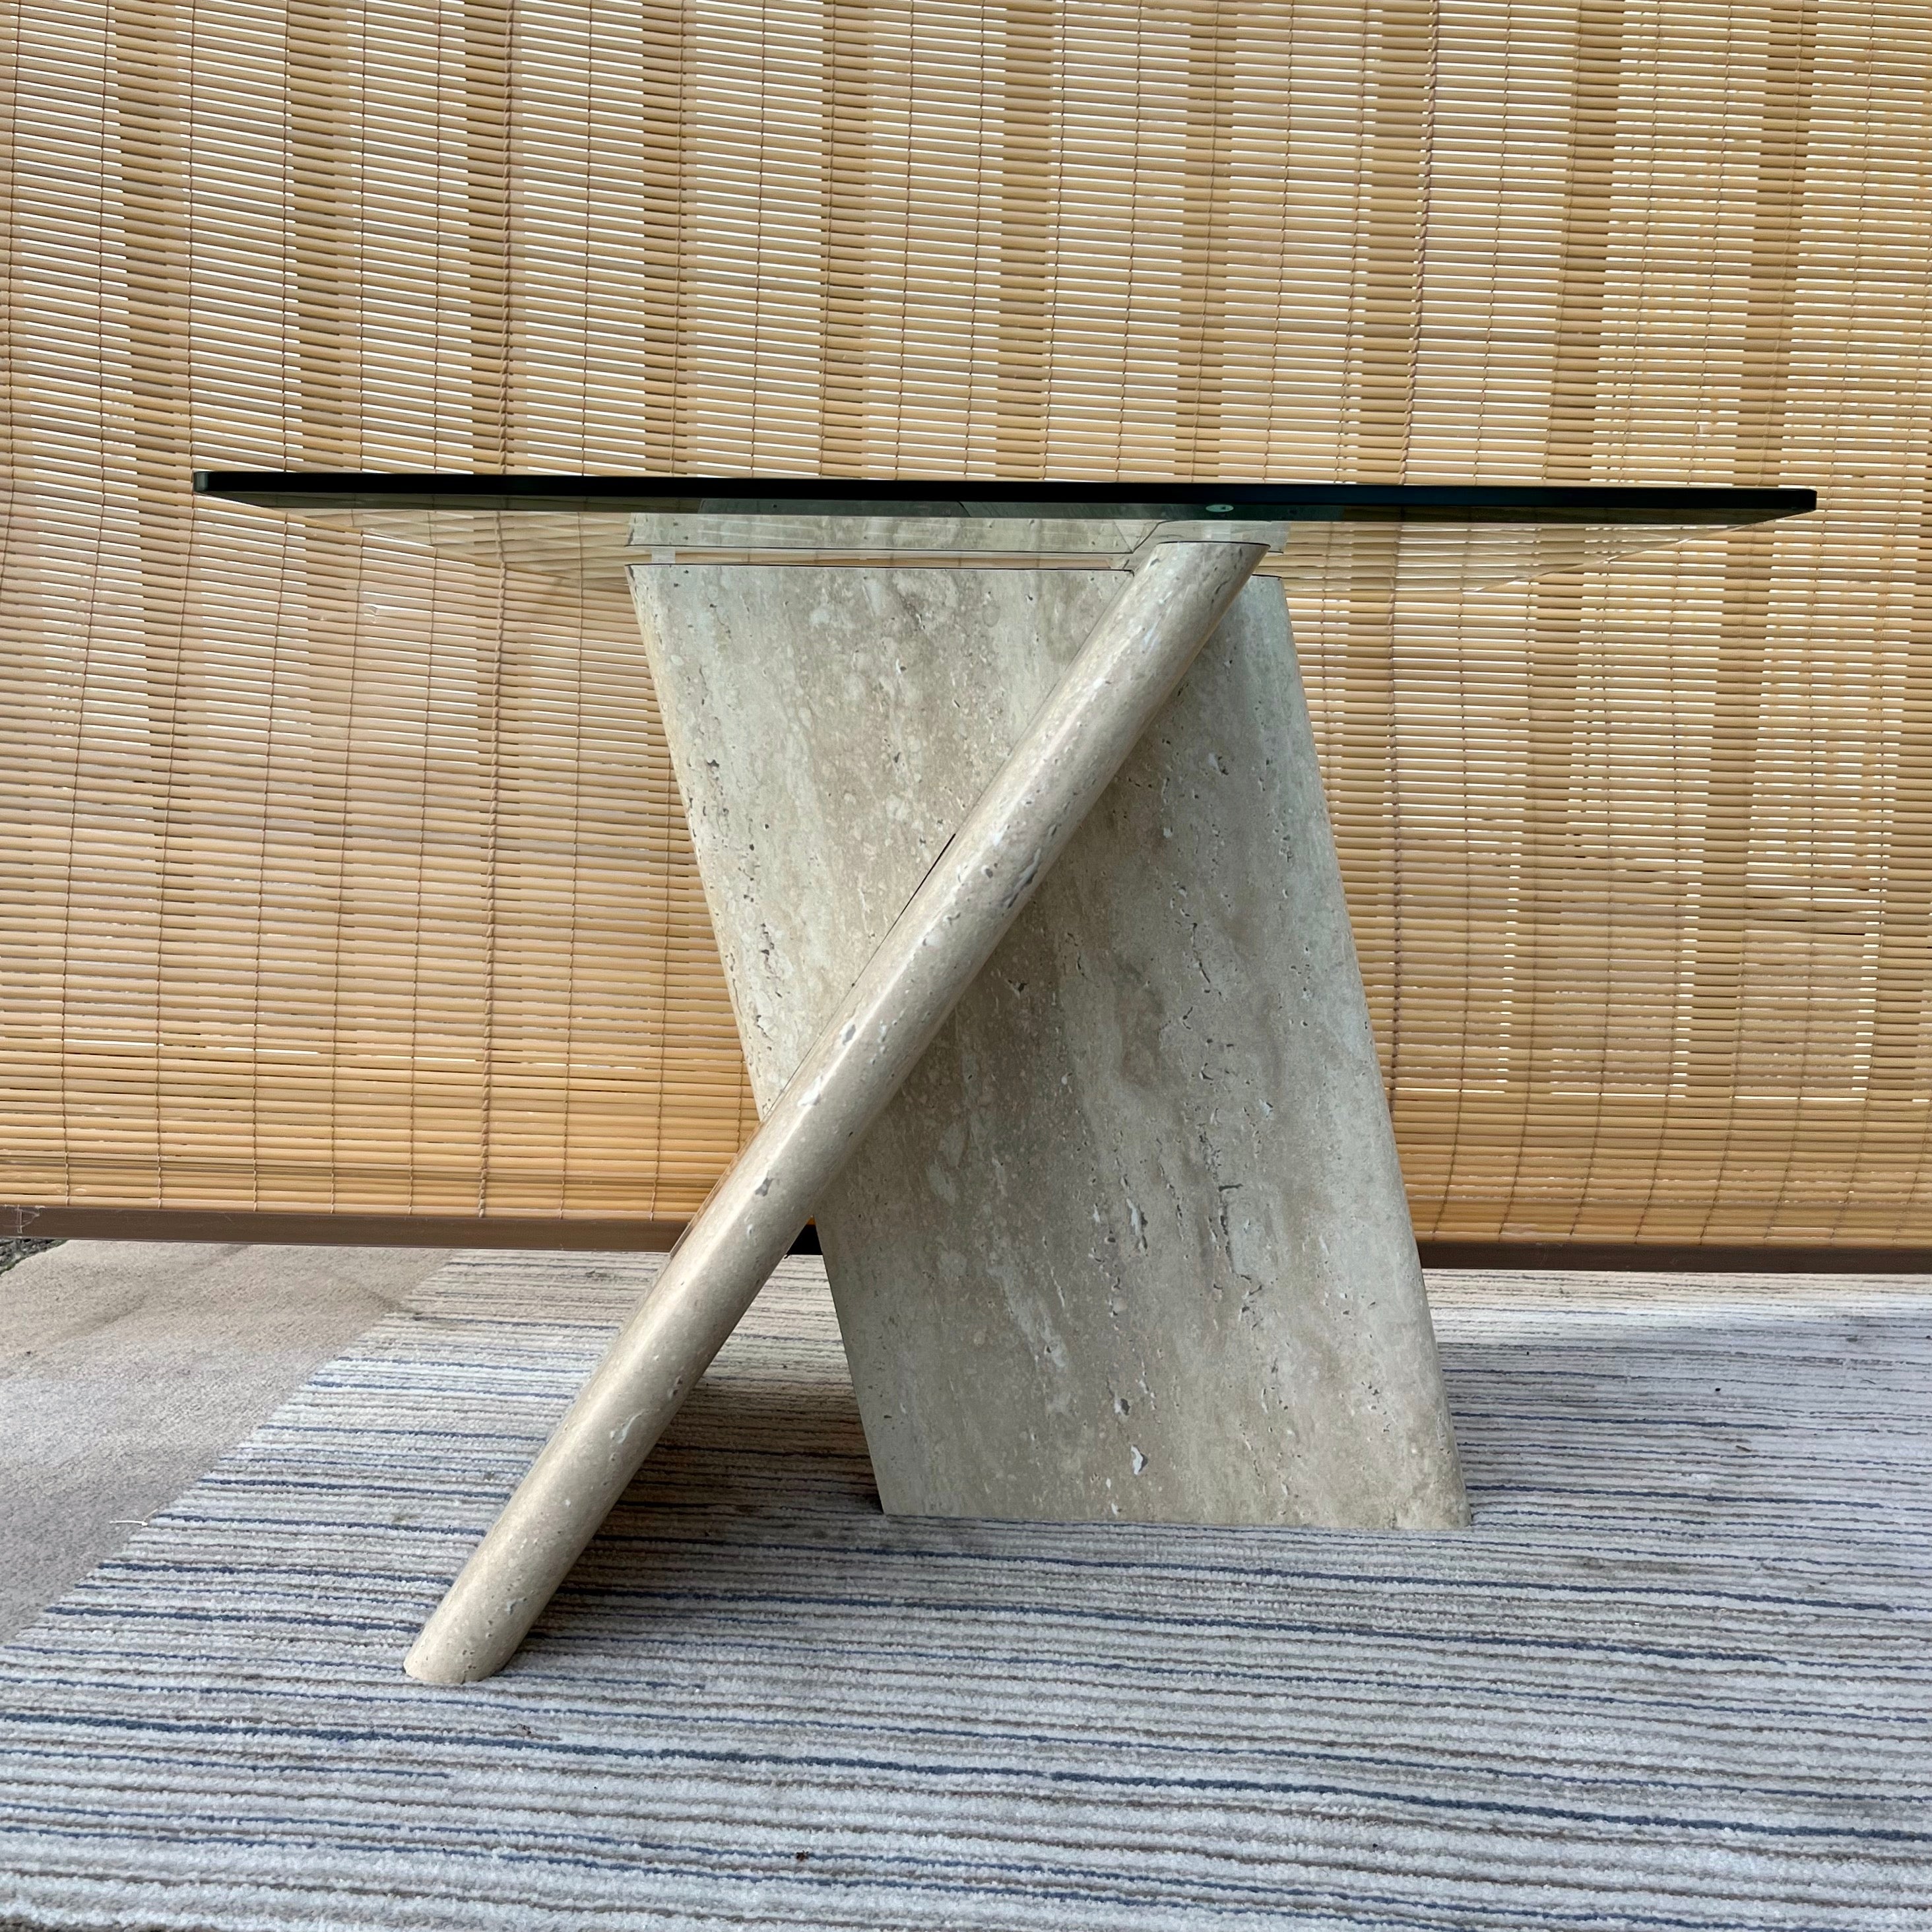 Table d'appoint vintage postmoderne en formica marbréCirca fin des années 1970.
Ce meuble se compose d'un socle géométrique en forme de X aux bords arrondis, laminé avec un formica marbré, surmonté d'un plateau en verre amovible carré biseauté. 
En